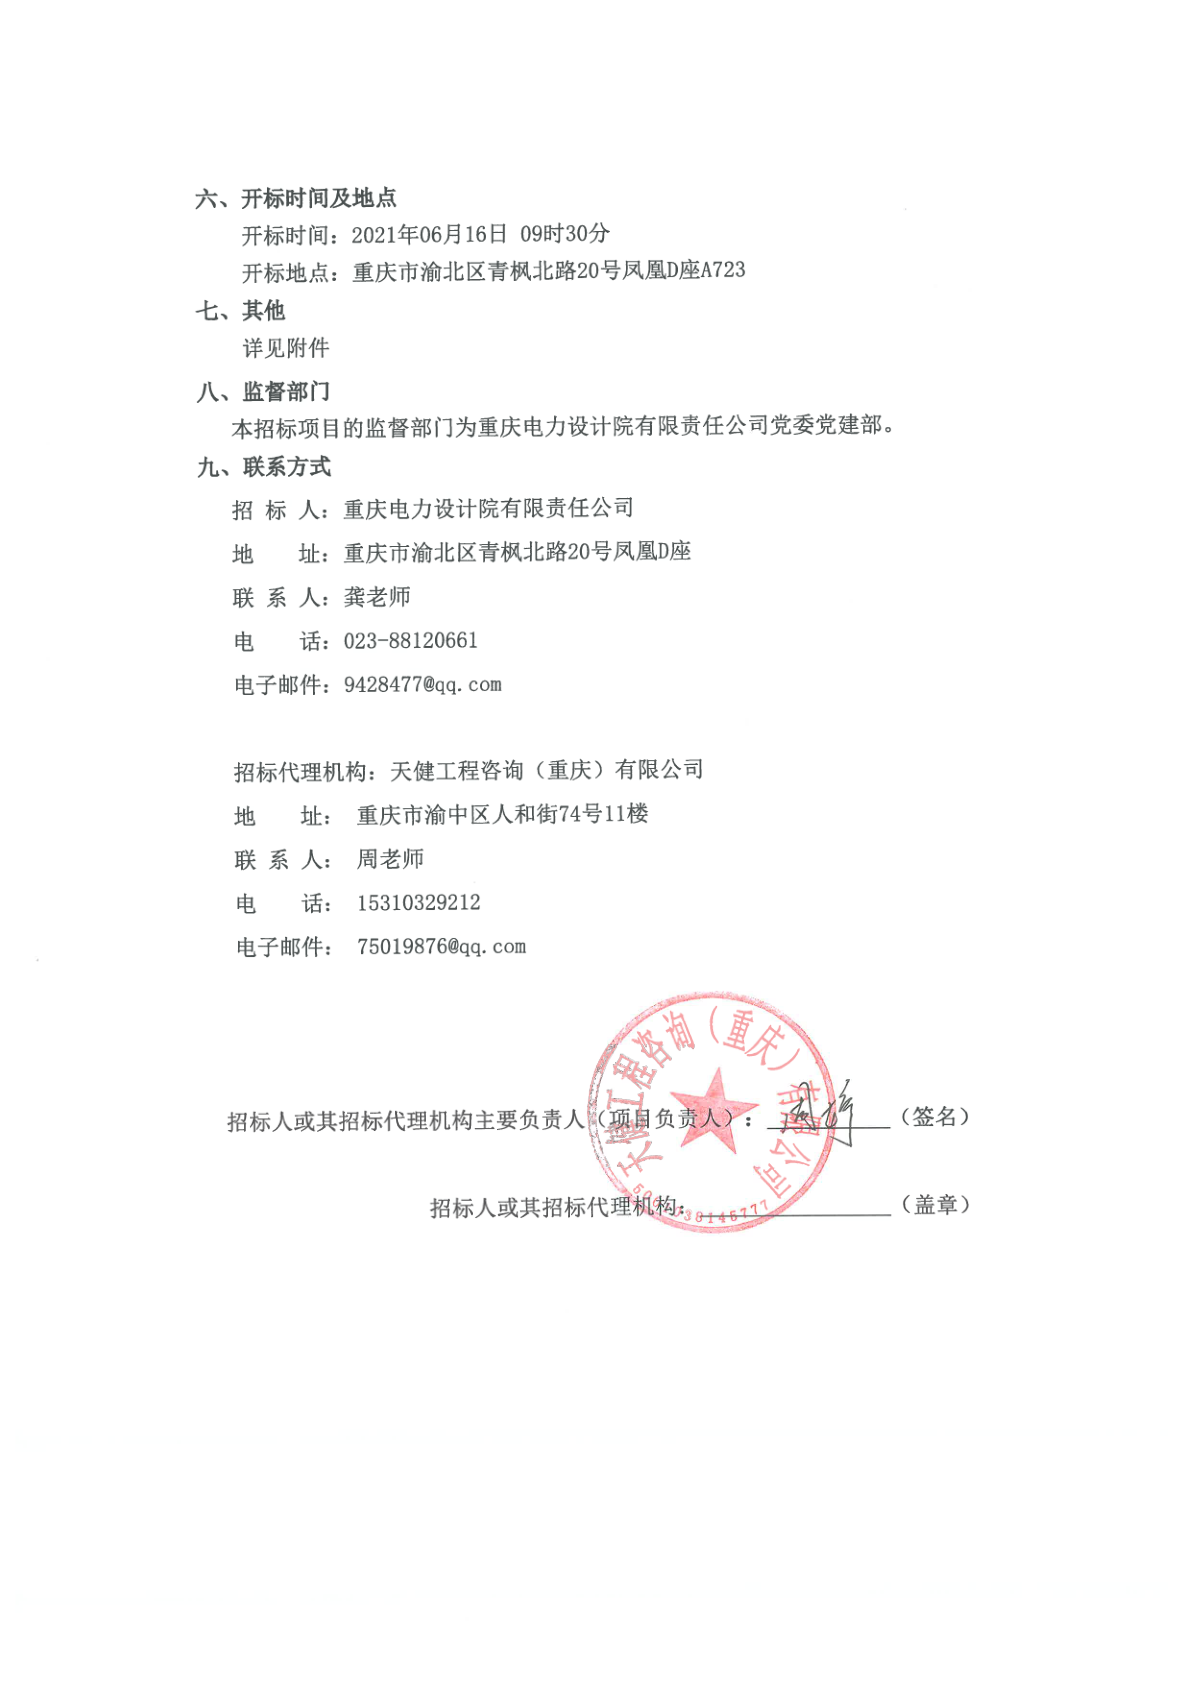 重庆电力设计院有限责任公司2021年6月第1批竞争性谈判采购公告